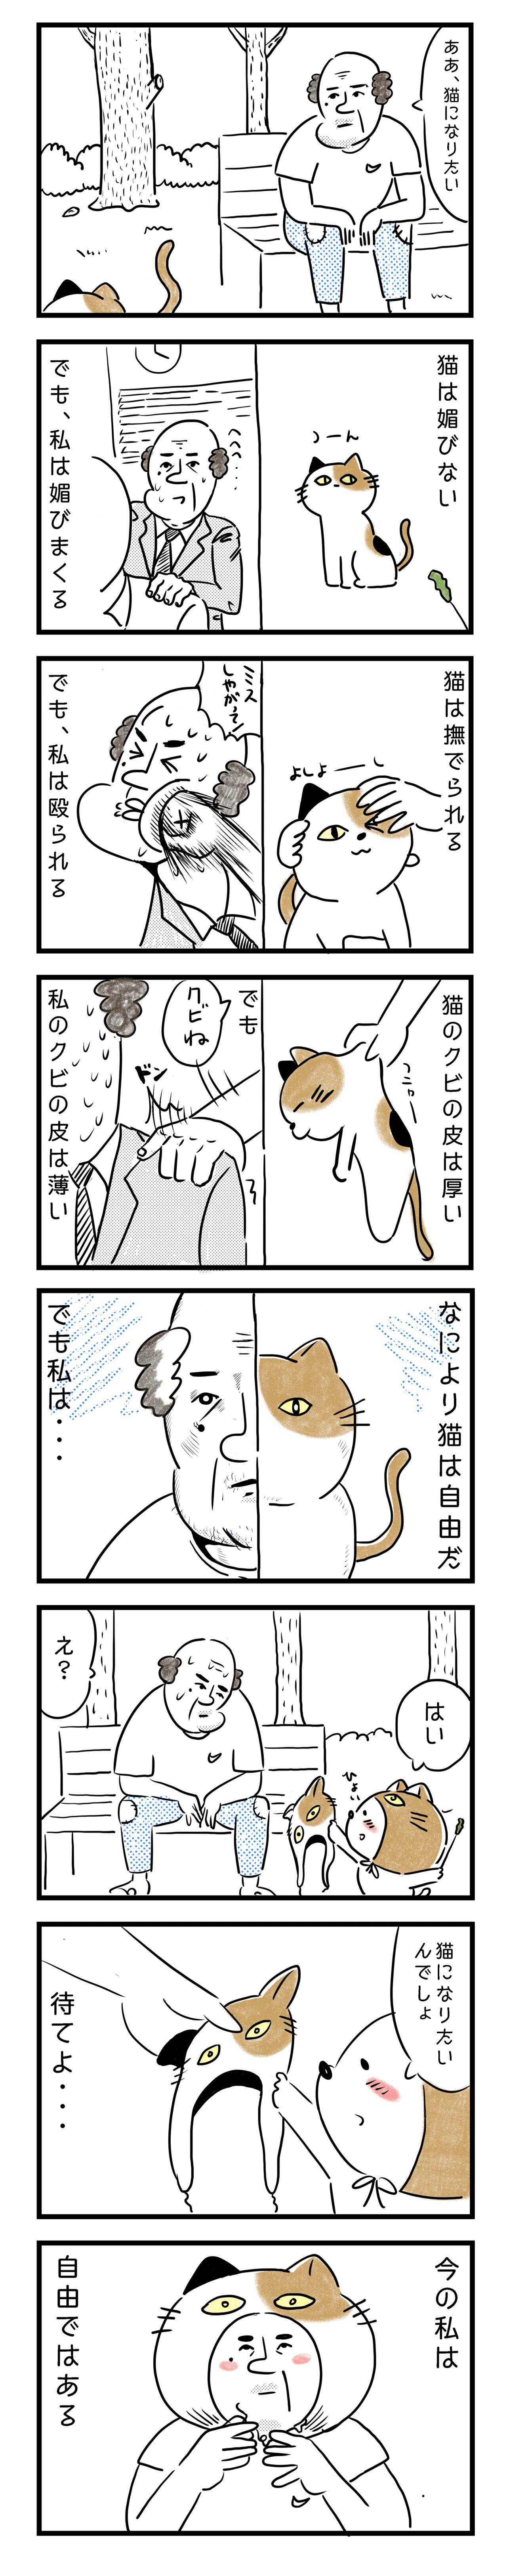 くぶねこ漫画03_note